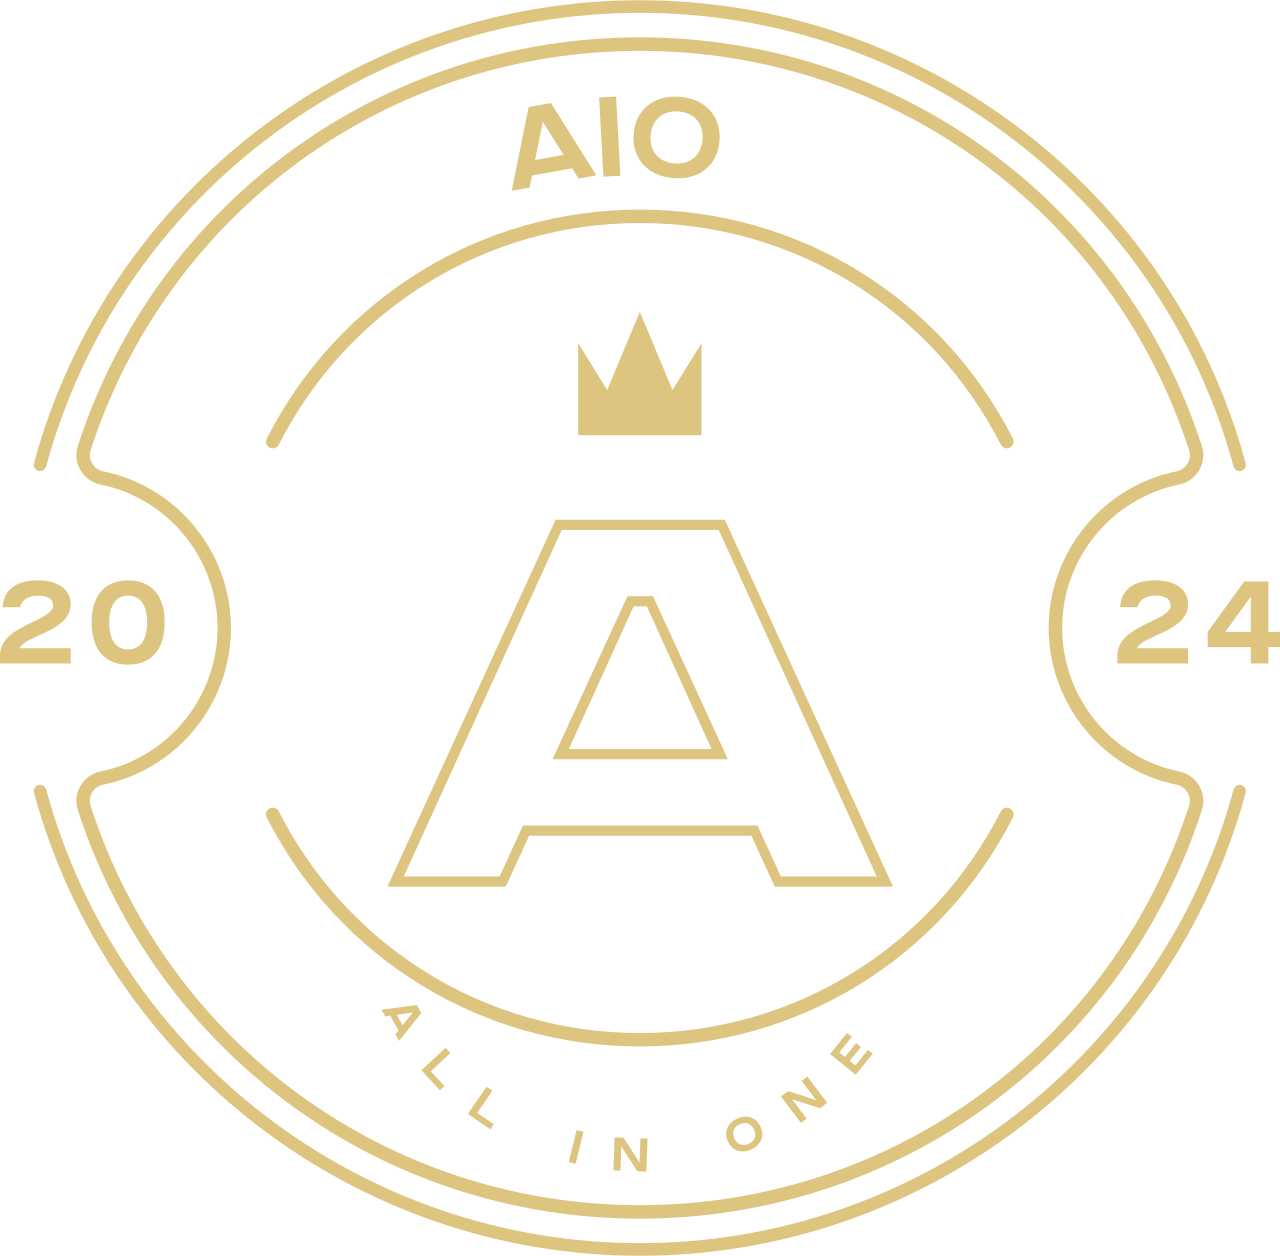 AIO 's logo